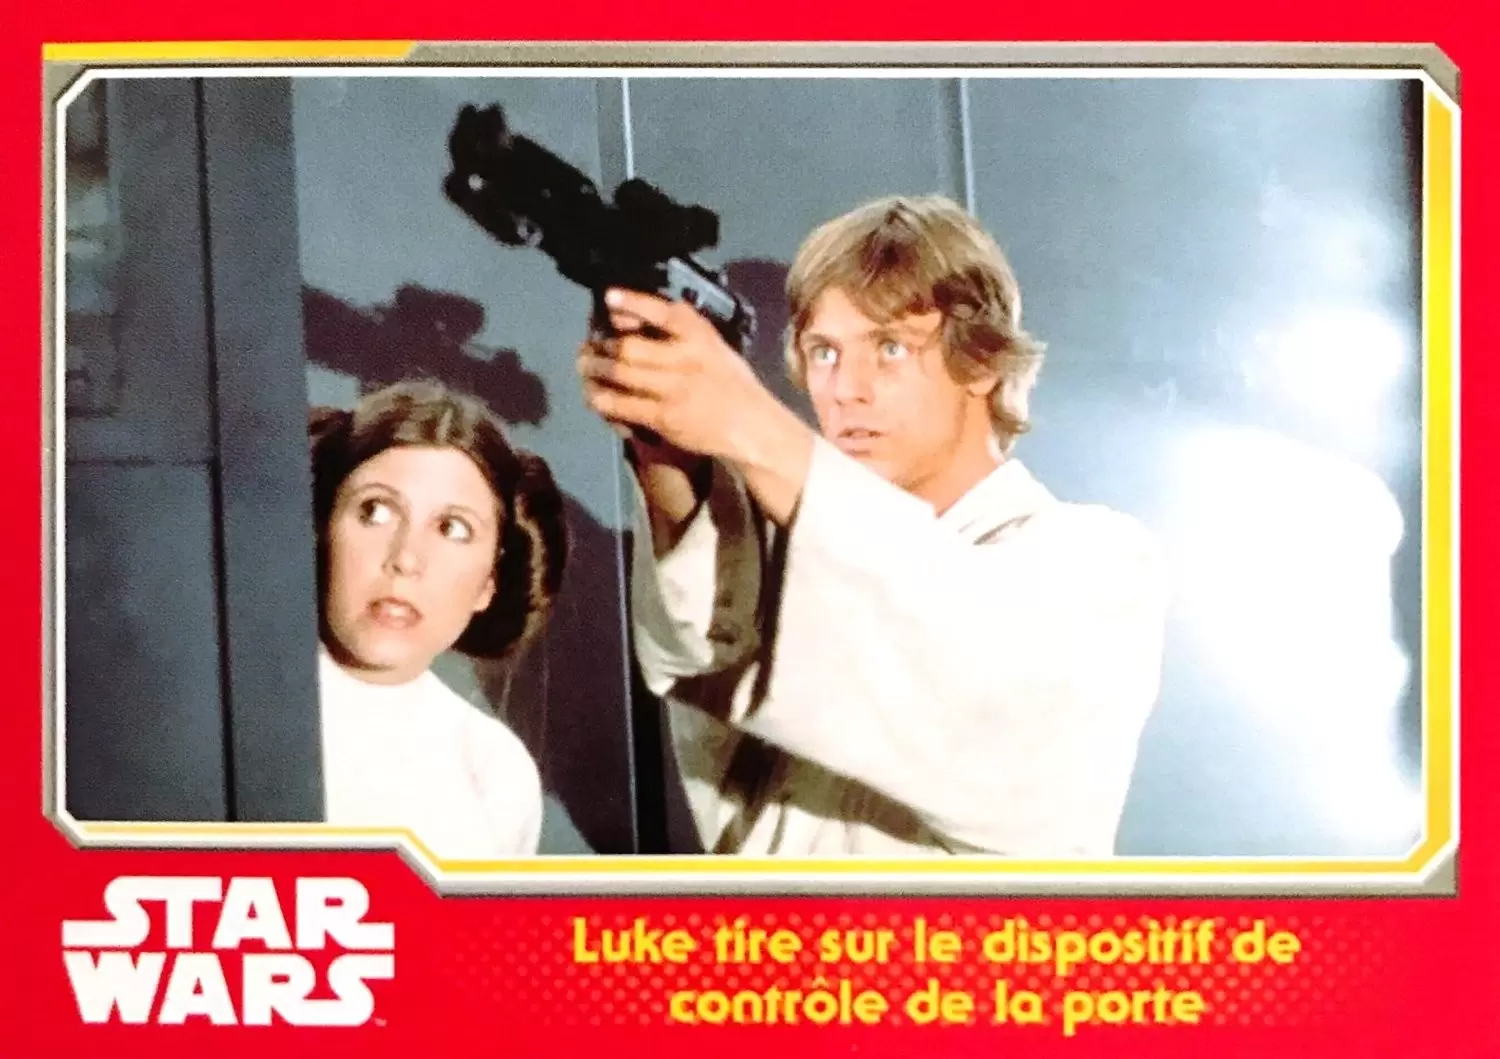 Topps - Voyage vers Star Wars : Le réveil de la force - Luke tire sur le dispositif de contrôle de la porte